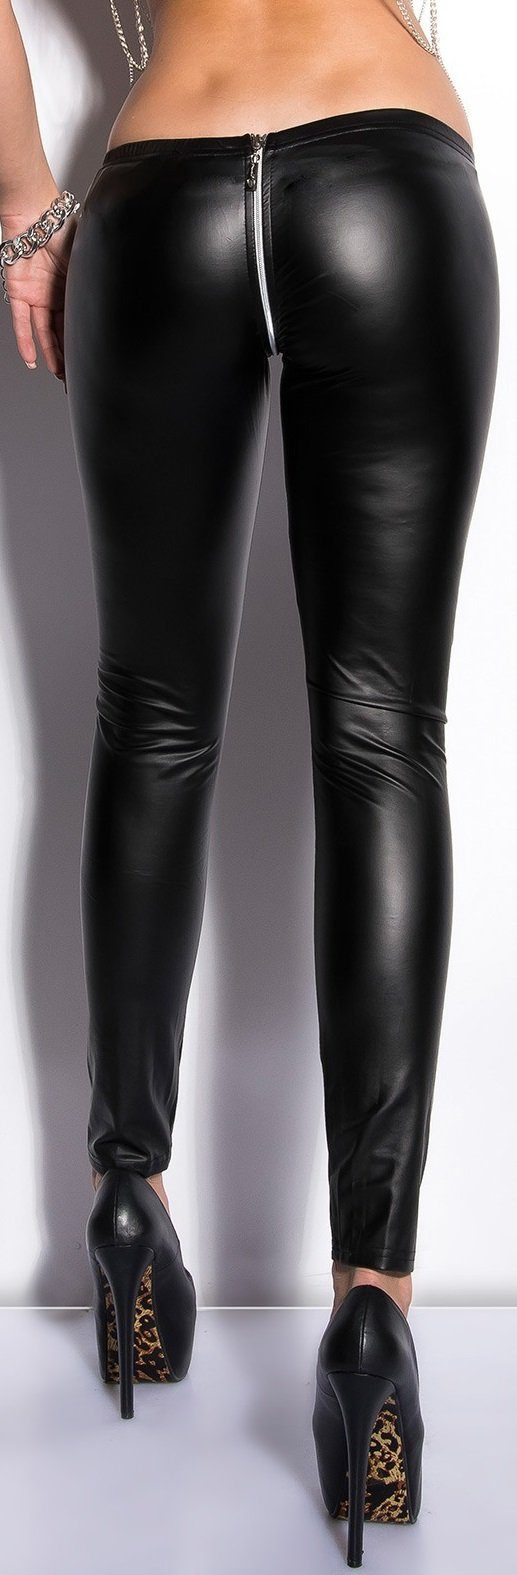 Koucla Leggings mit Reißverschluß (Zip) im Wetlook, Gogo Clubwear Party schwarz